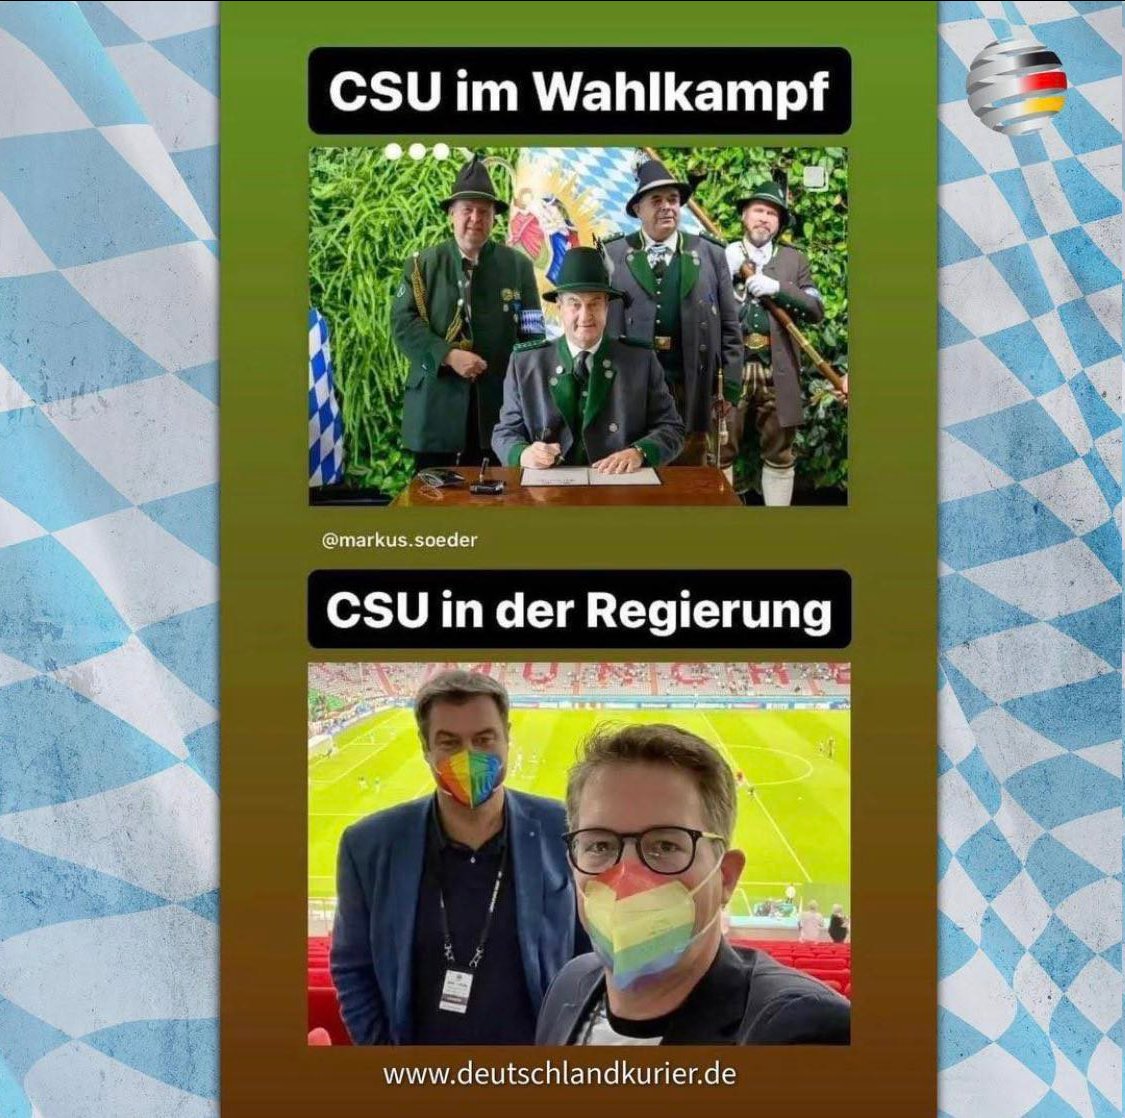 #CDU #CSU #Wahlkampf #Söder #Mogelpackung #Wahlversprechen #Heuchler #afd #unwokegermanTwitter #fckAfd #wirsindmehr #wirsindnochmehr #wirsindvielmehr #nurnochafd